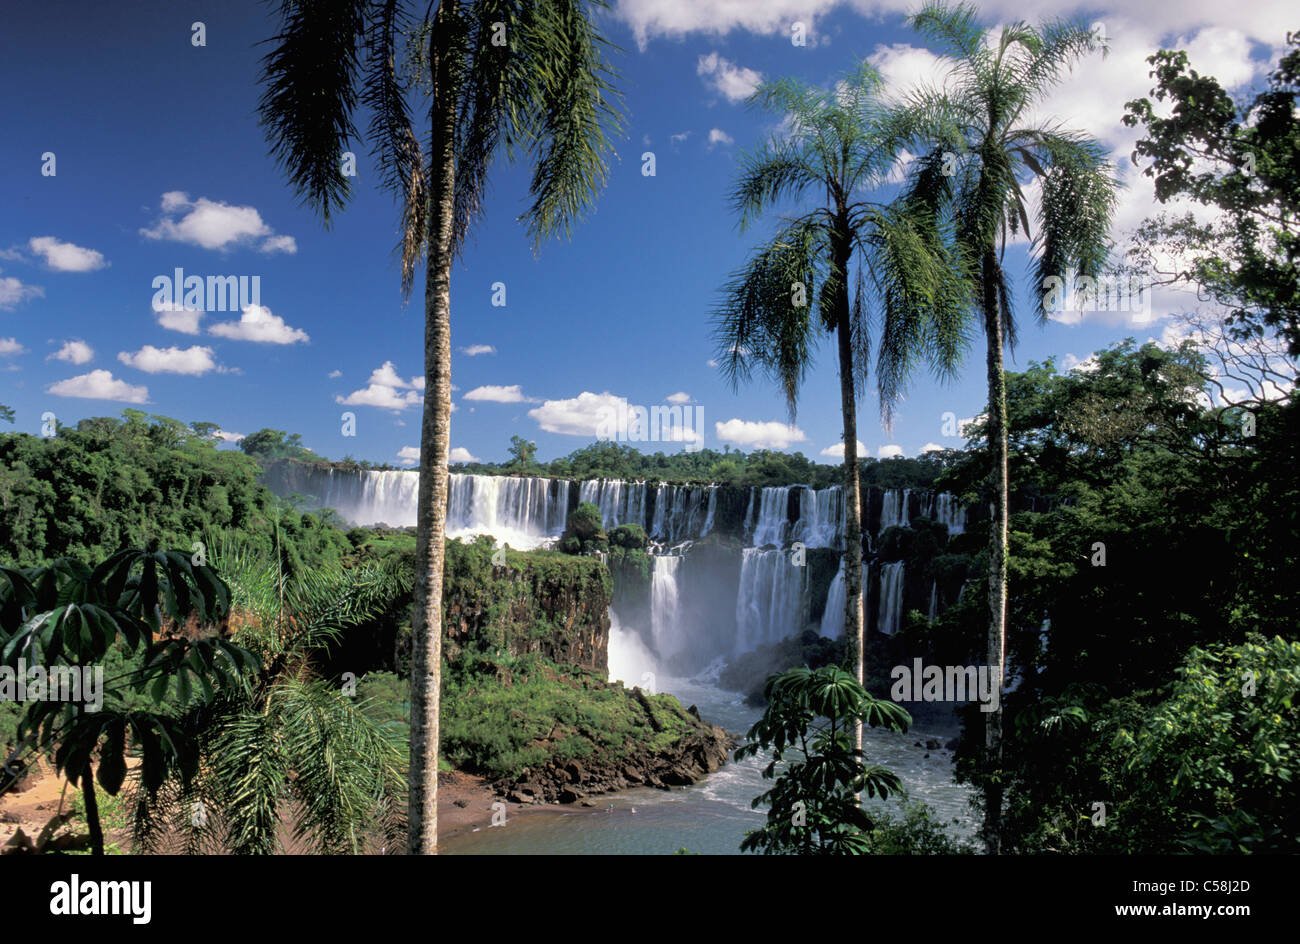 Parque National Iguazu, Cataratas do Iguazu, Iguazu Wasserfälle, Foz do Iguazu, Parana, Brasilien, Südamerika, Wasserfall, Palmen Stockfoto